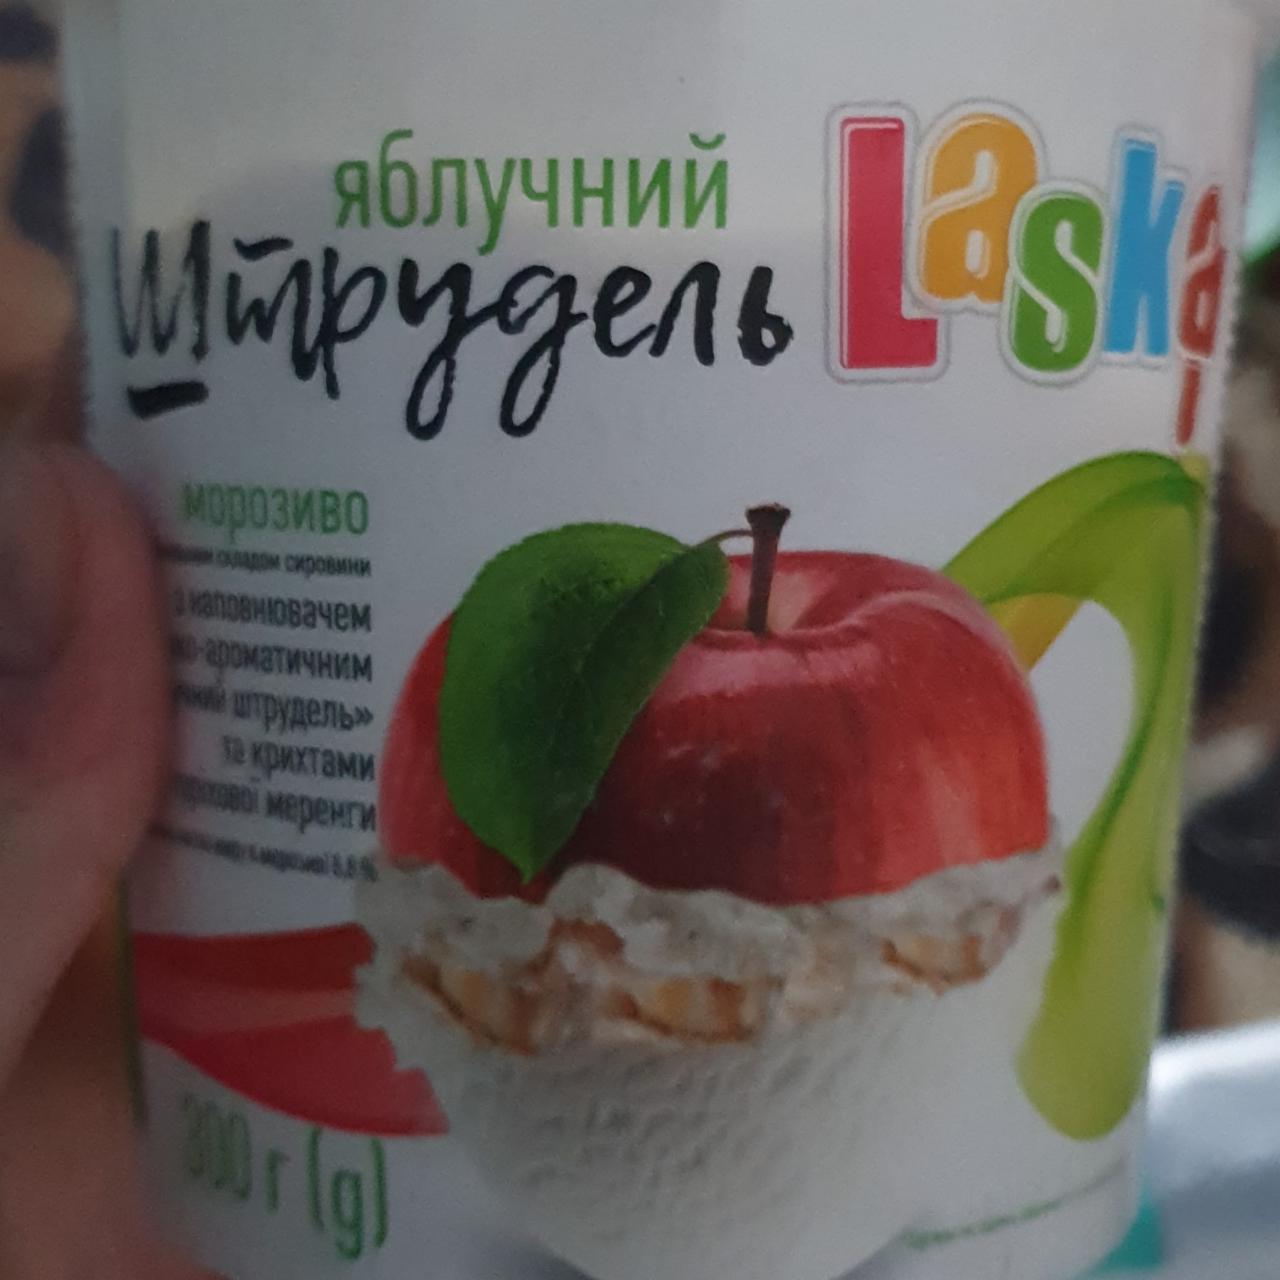 Фото - мороженое яблочный штрудель Laska